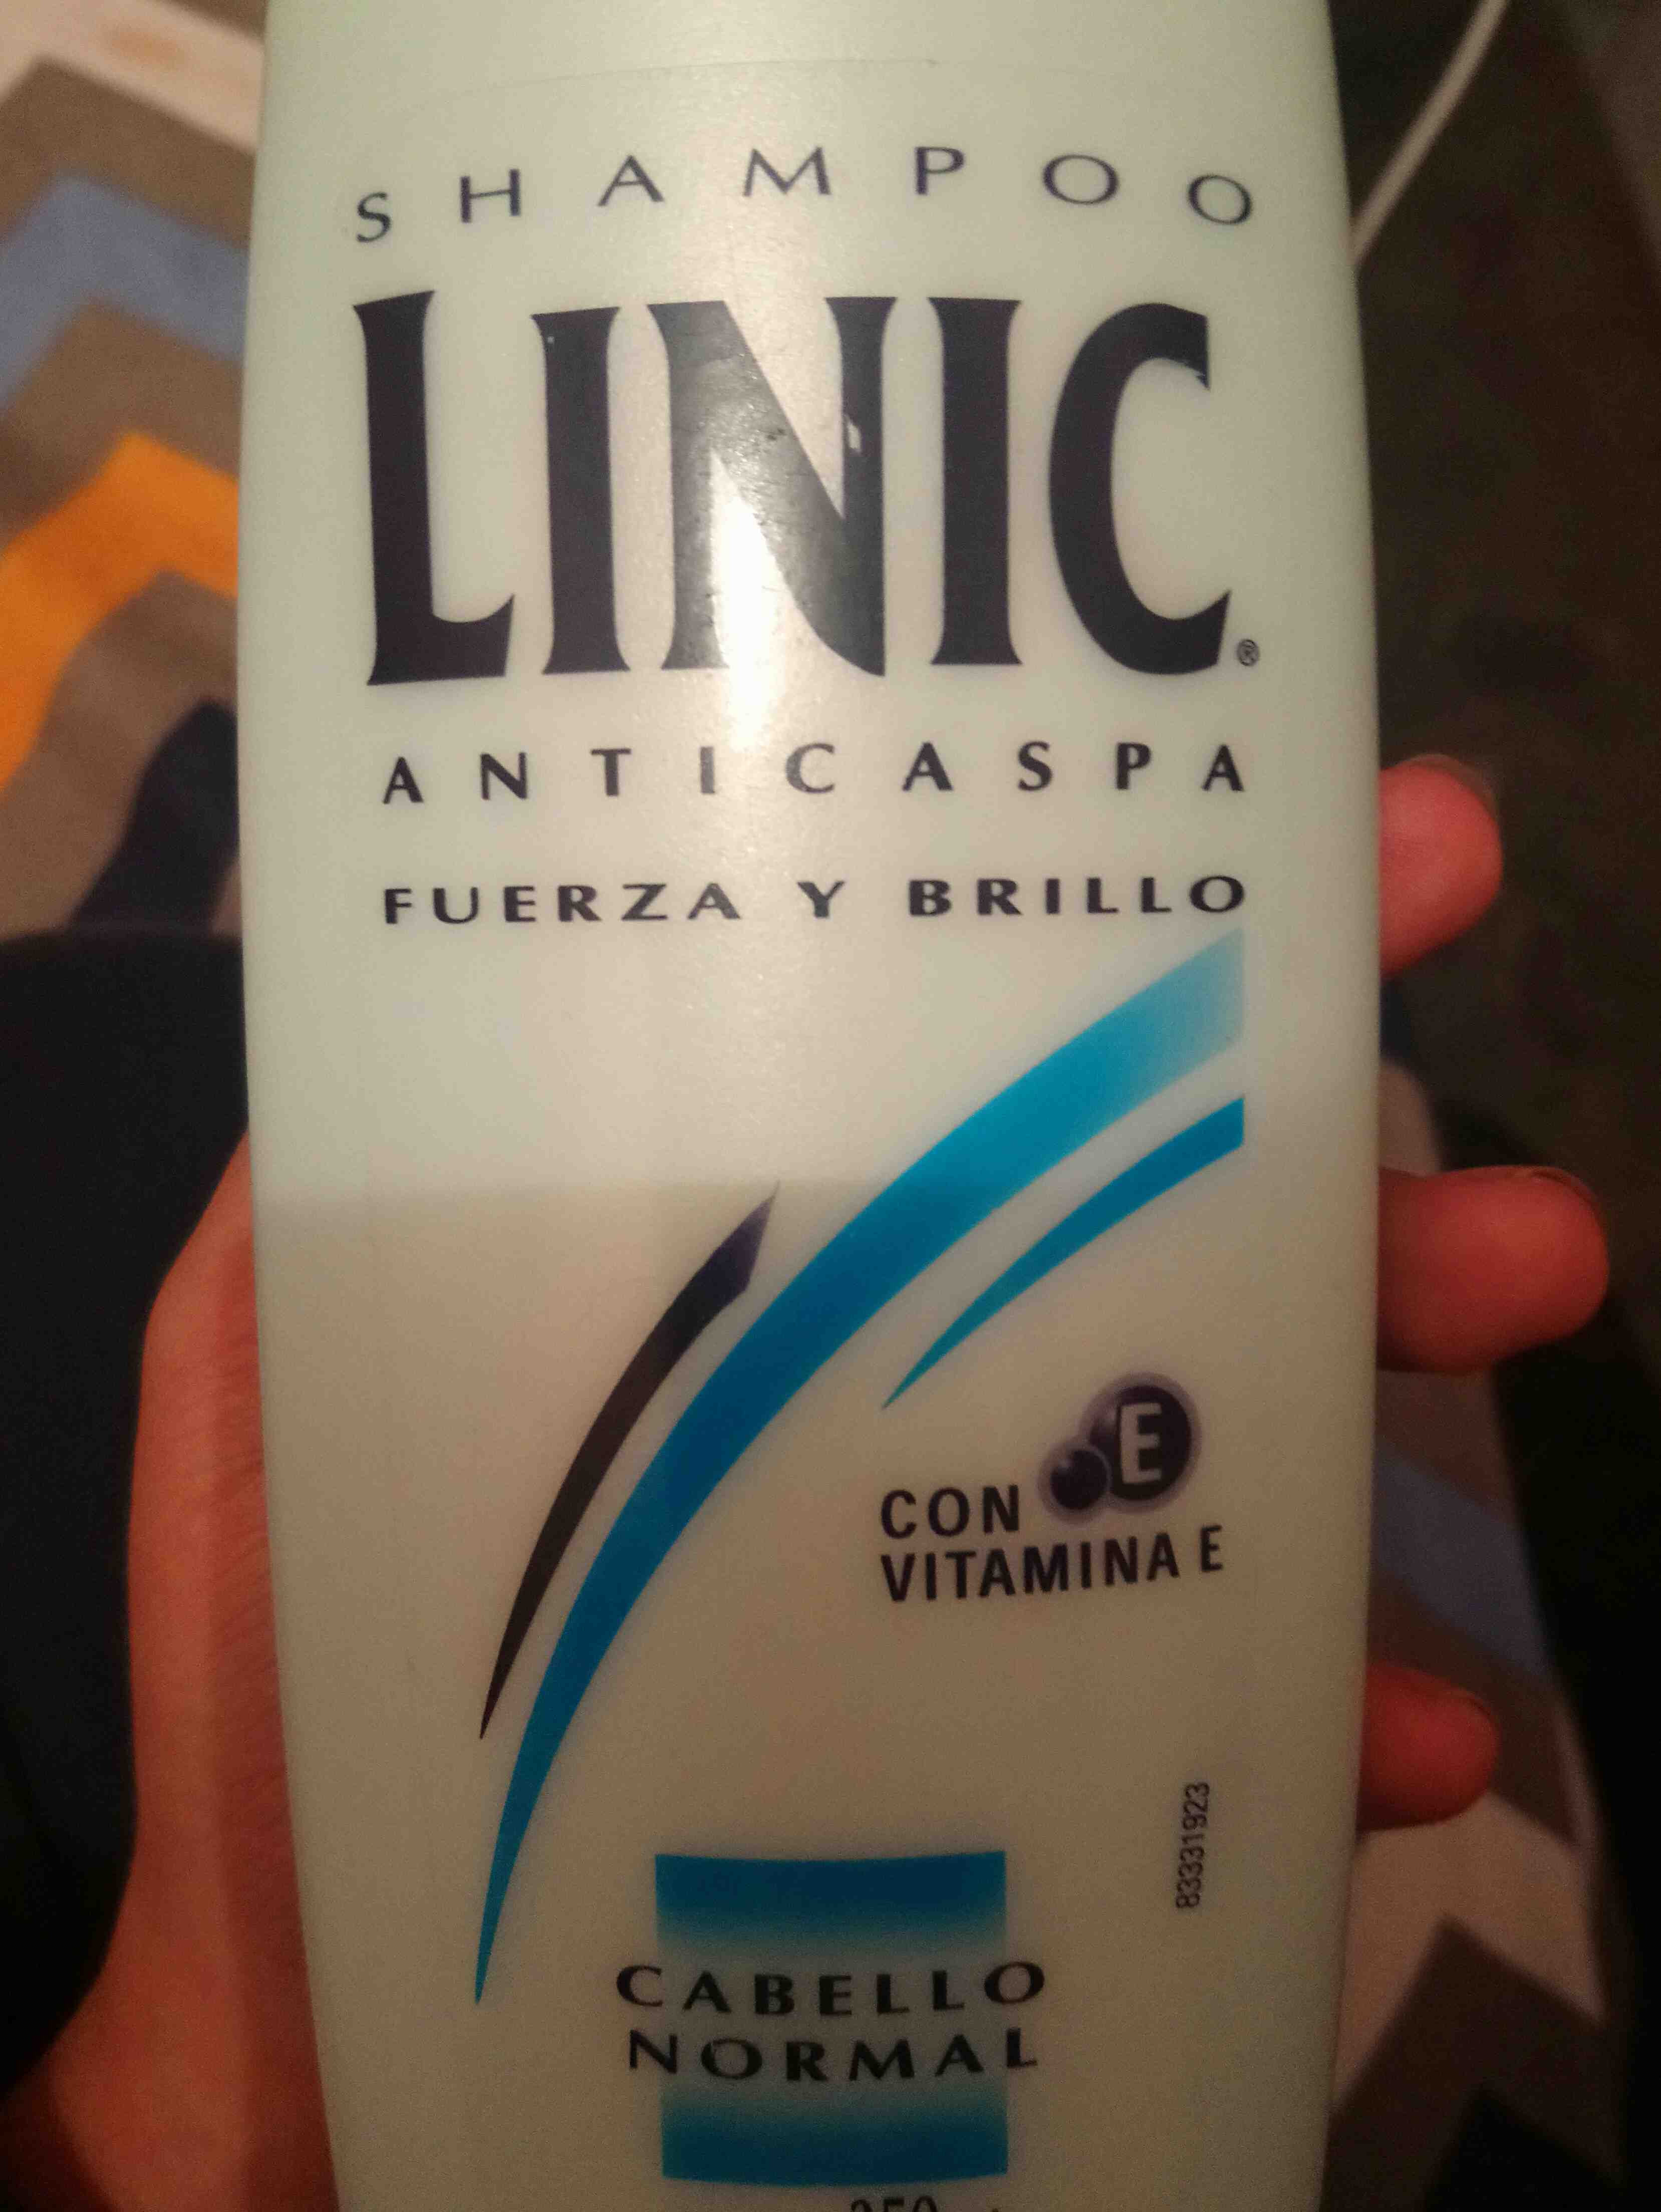 Linic shampoo - Product - en